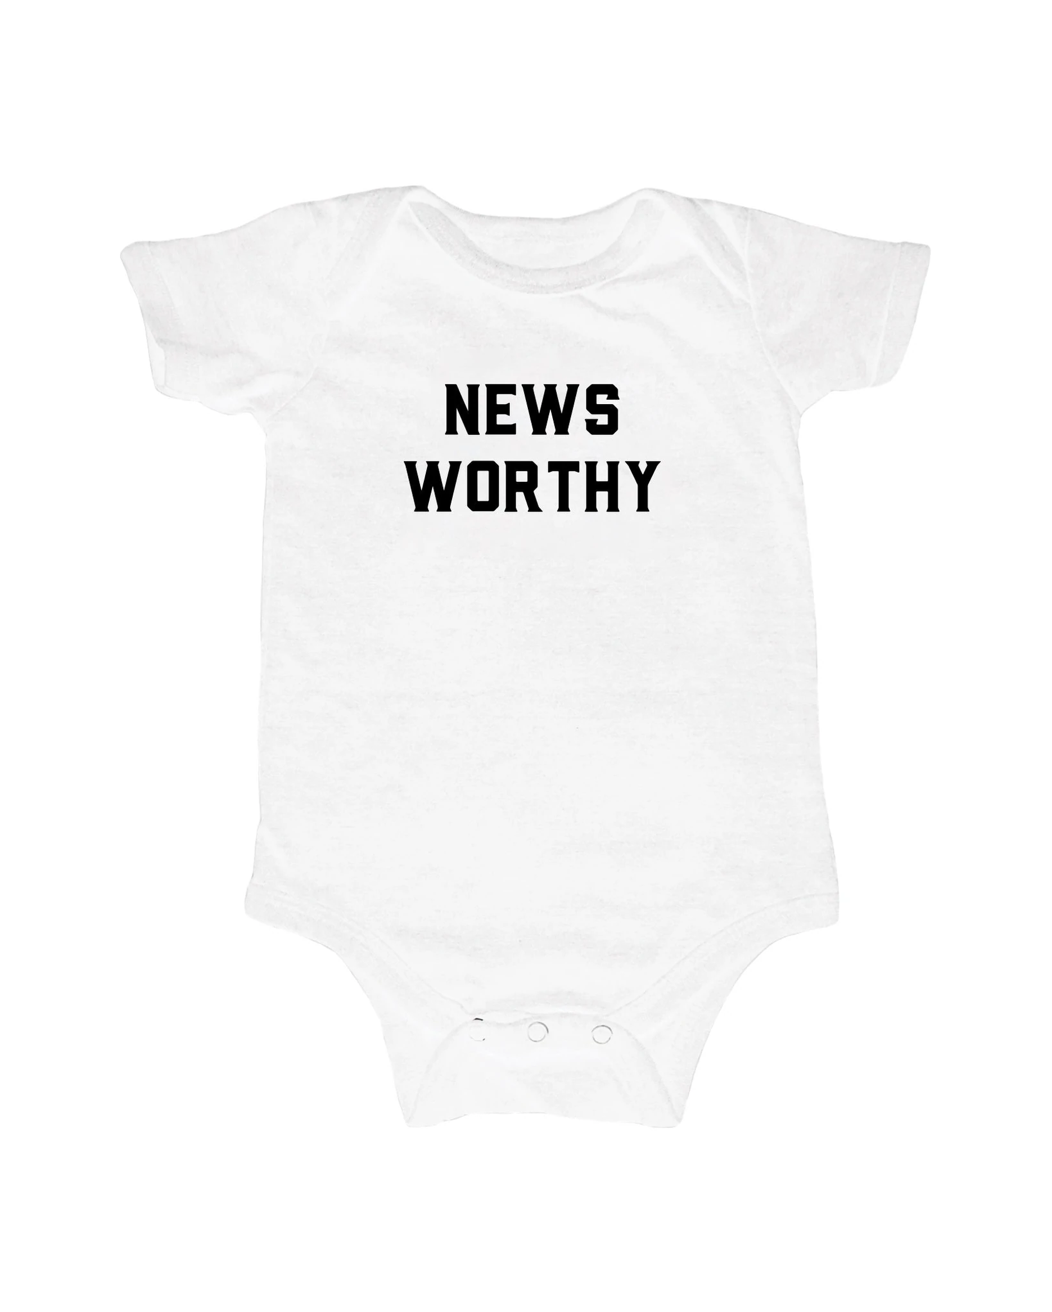 Newsworthy Short Sleeve White Baby Bodysuit - Twinkle Twinkle Little One